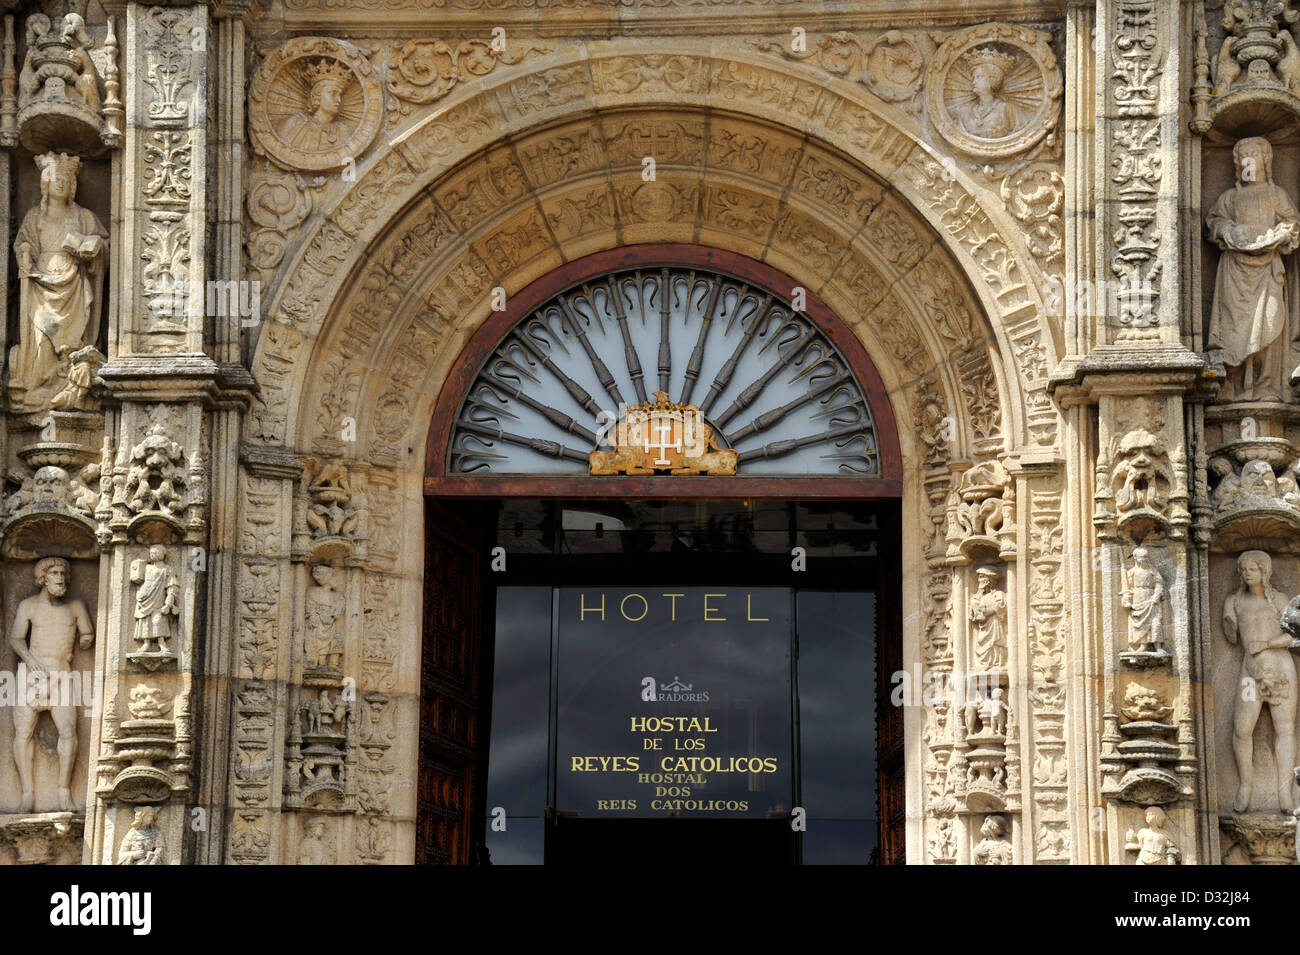 Hotel,Parador,Hostal de los Reyes Catolicos,Santiago de Compostela,Pilgrimage,Way of St. James,La Coruna province,Galicia, Spain Stock Photo